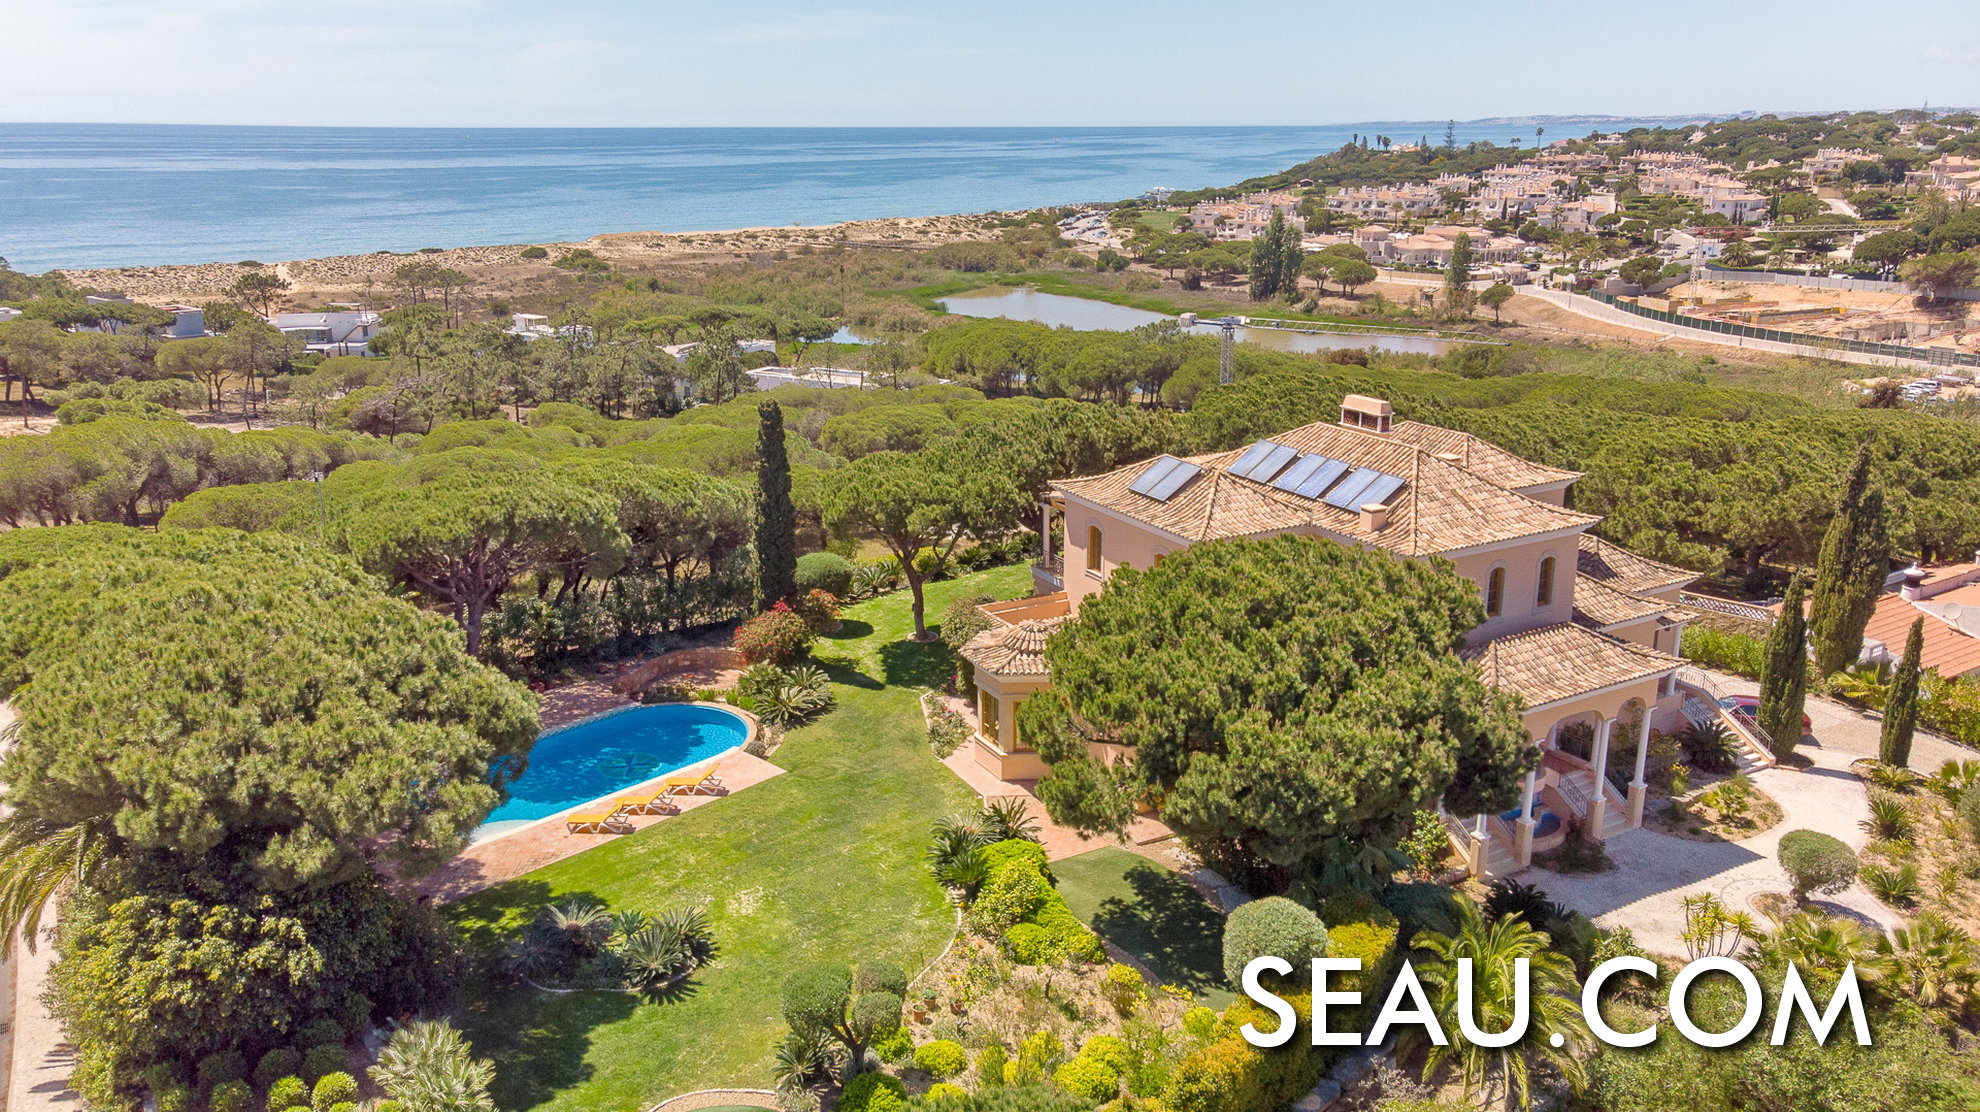 Emplacement spectaculaire pour vivre au Portugal, une villa avec vue sur la mer, en pleine nature dans la station balnéaire de Vale do Lobo, Algarve